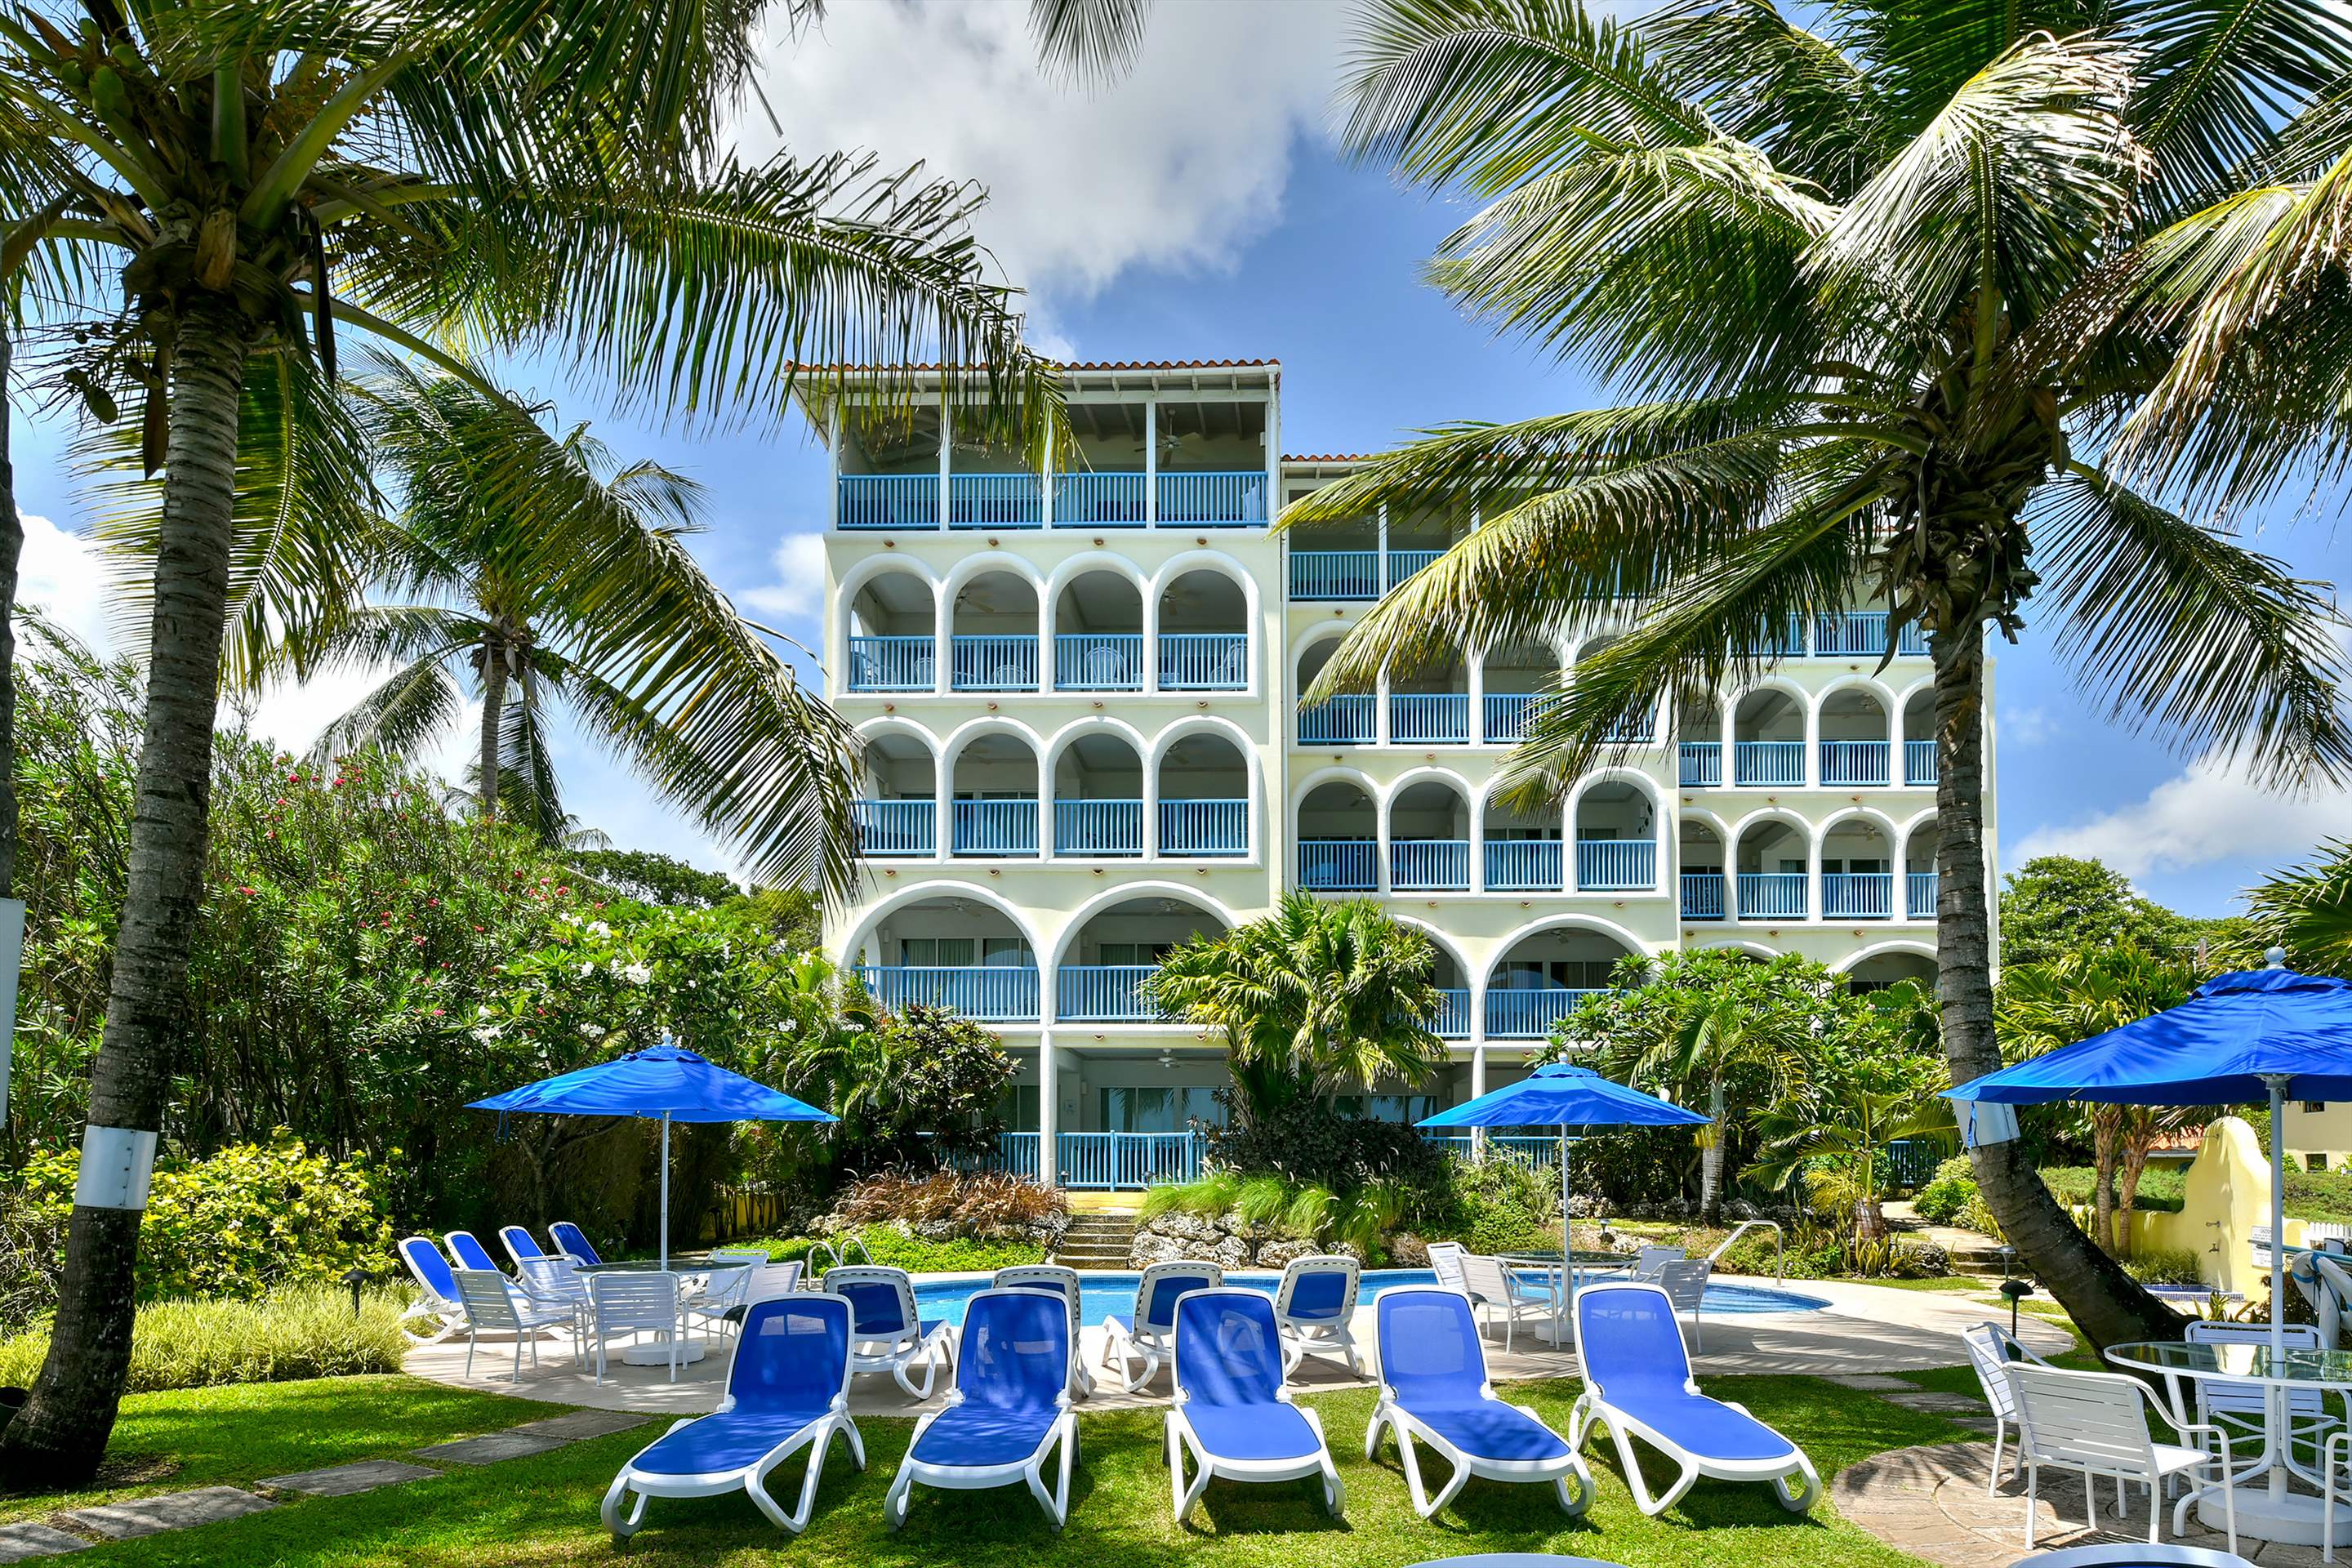 Maxwell Beach Villas 101, 2 bedroom, 2 bedroom apartment in St. Lawrence Gap & South Coast, Barbados Photo #10